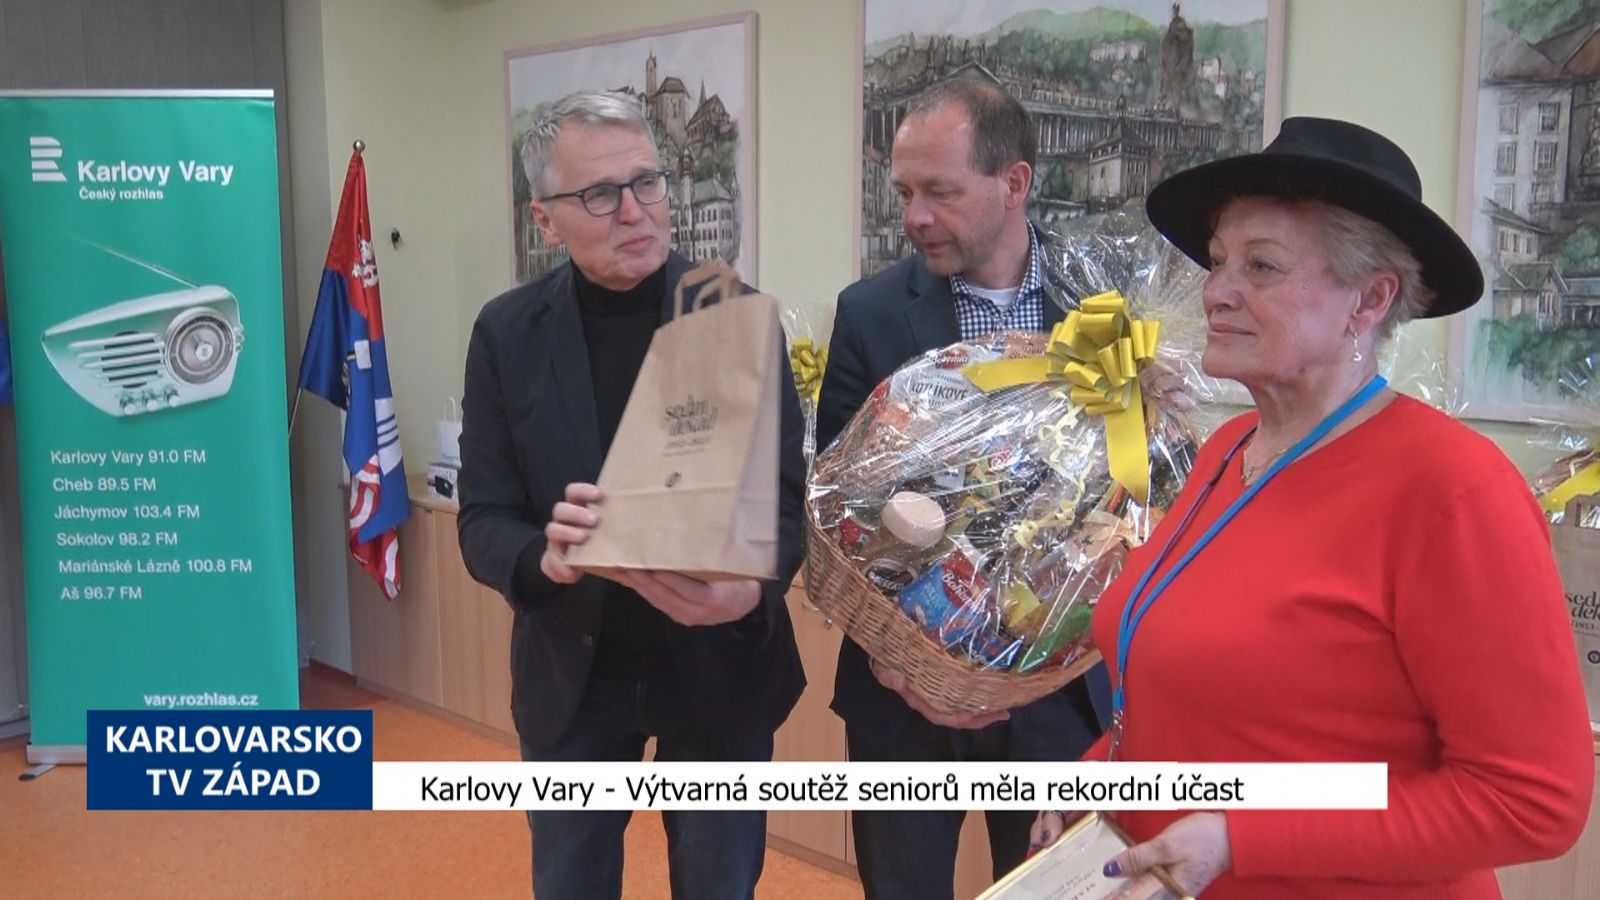 Karlovy Vary: Výtvarná soutěž seniorů měla rekordní účast (TV Západ)